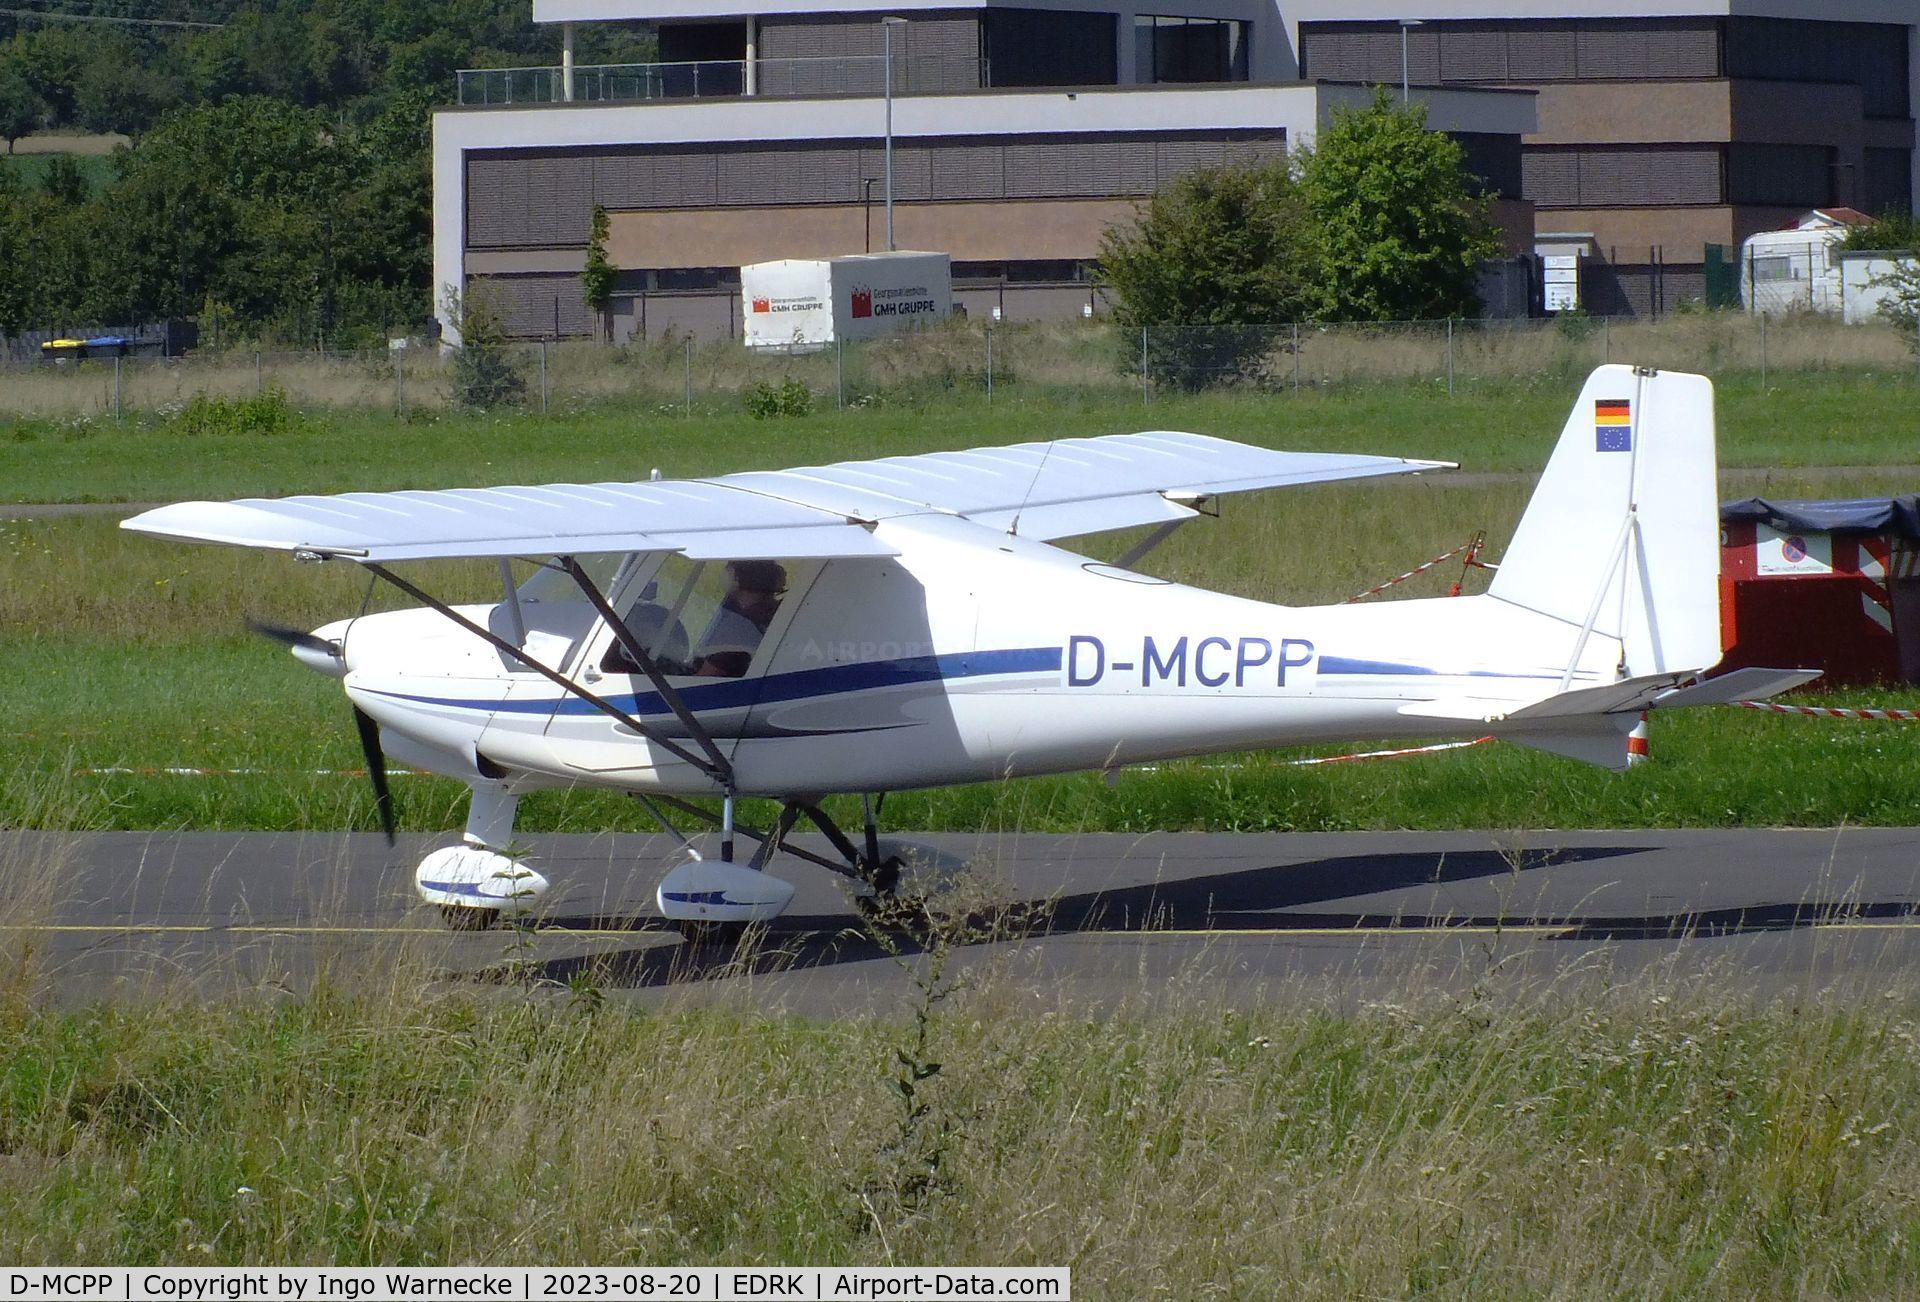 D-MCPP, Comco Ikarus C42B C/N 0051, Comco Ikarus C42B at Koblenz-Winningen airfield